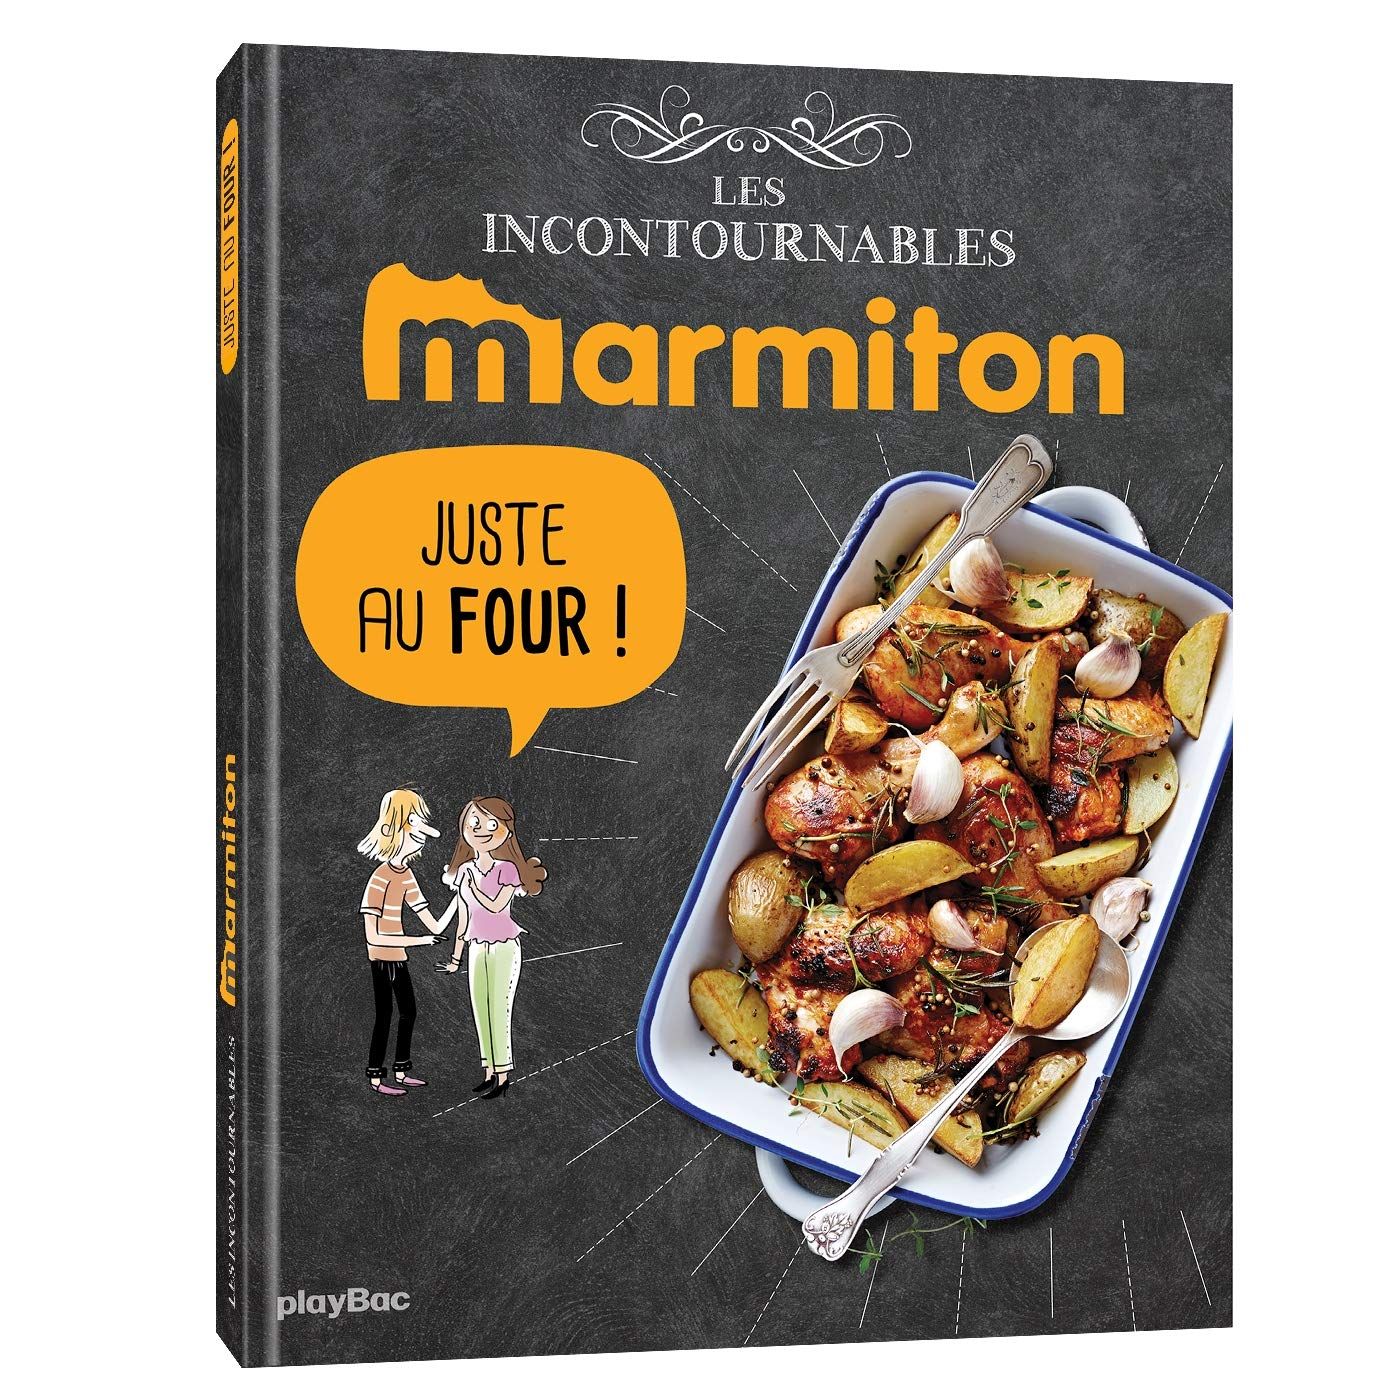 Le livre de recettes Marmiton Juste au four est sorti !